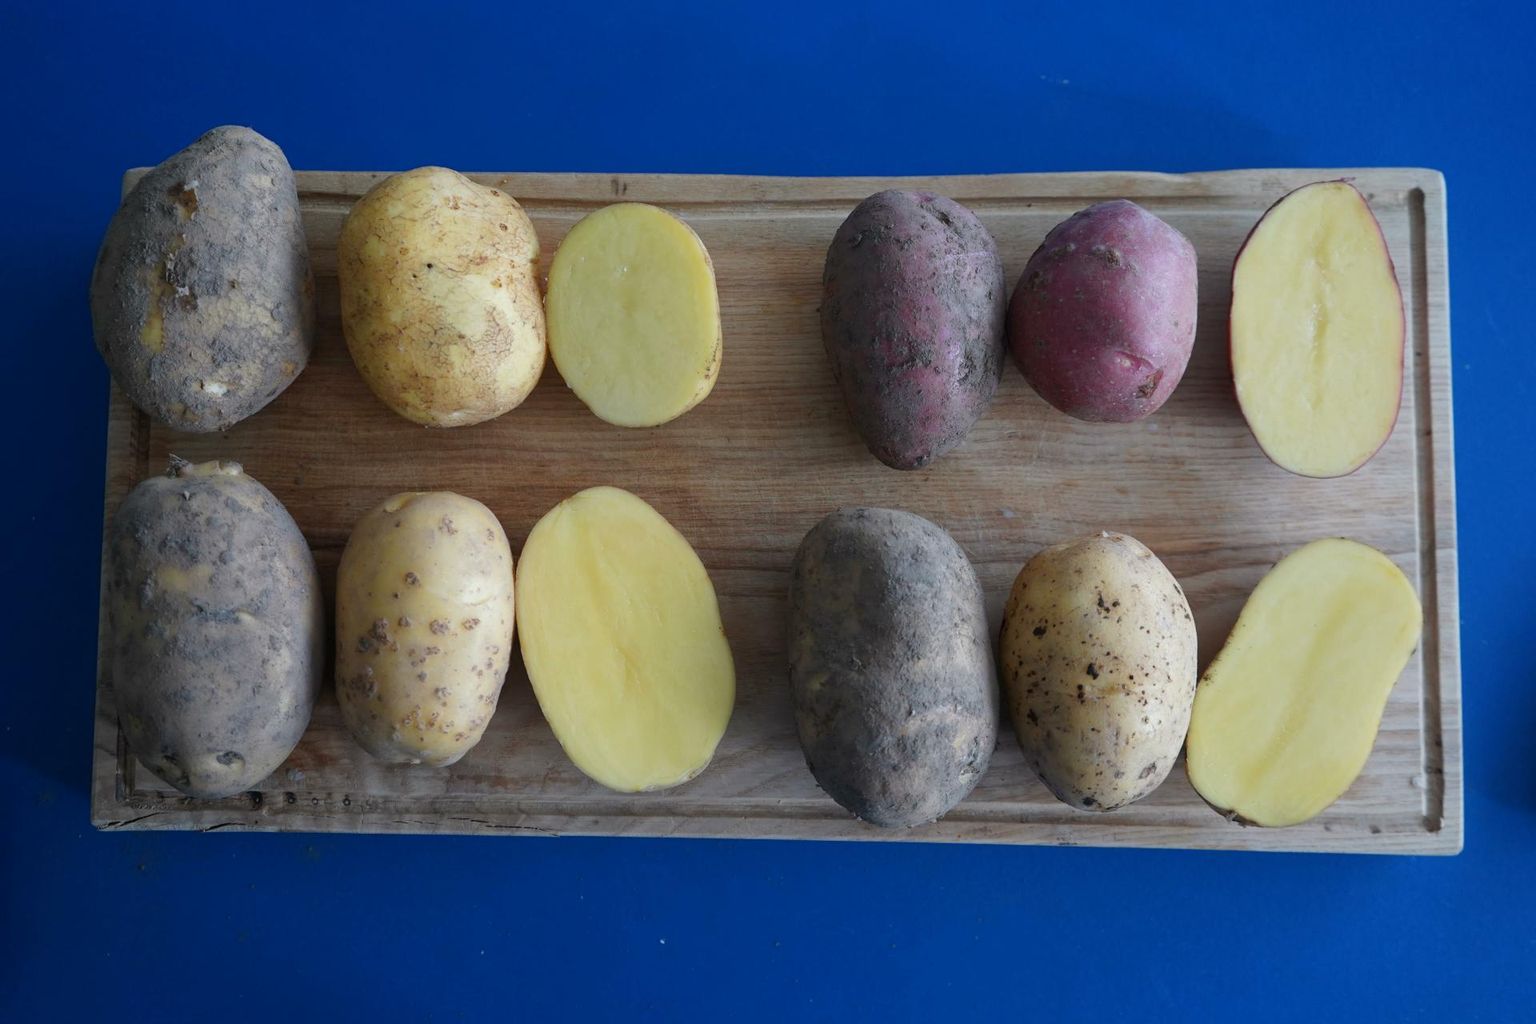 Pesemata kartulid näevad üsna sarnased välja, kuid pestud ja pooleks lõigatud mugulad on juba igaüks ise nägu.